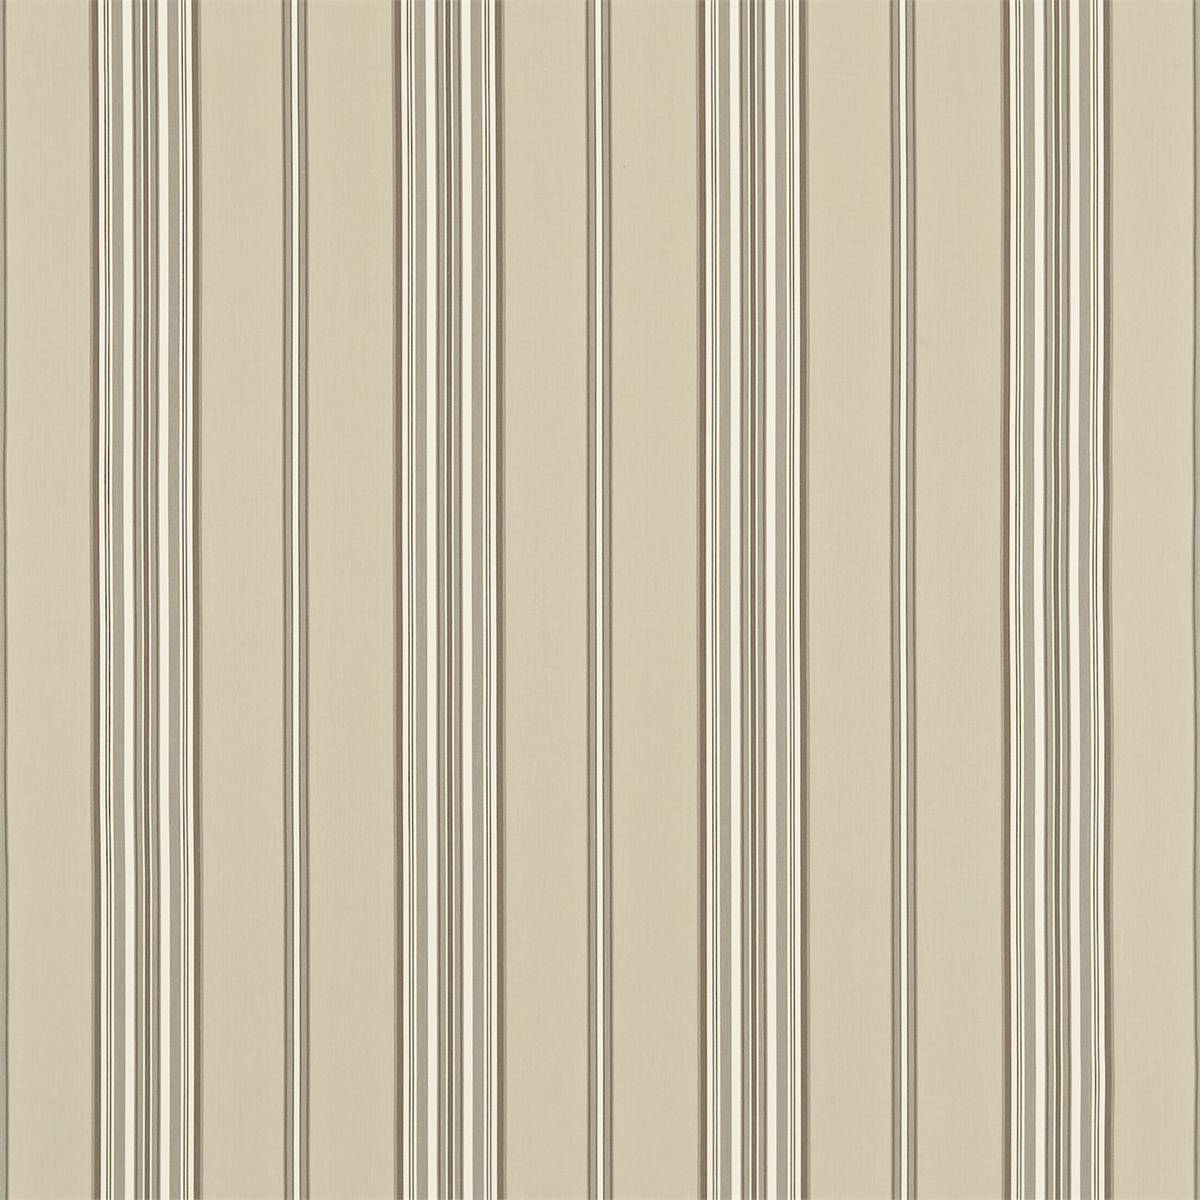 Saxon Linen/Dove Fabric by Sanderson